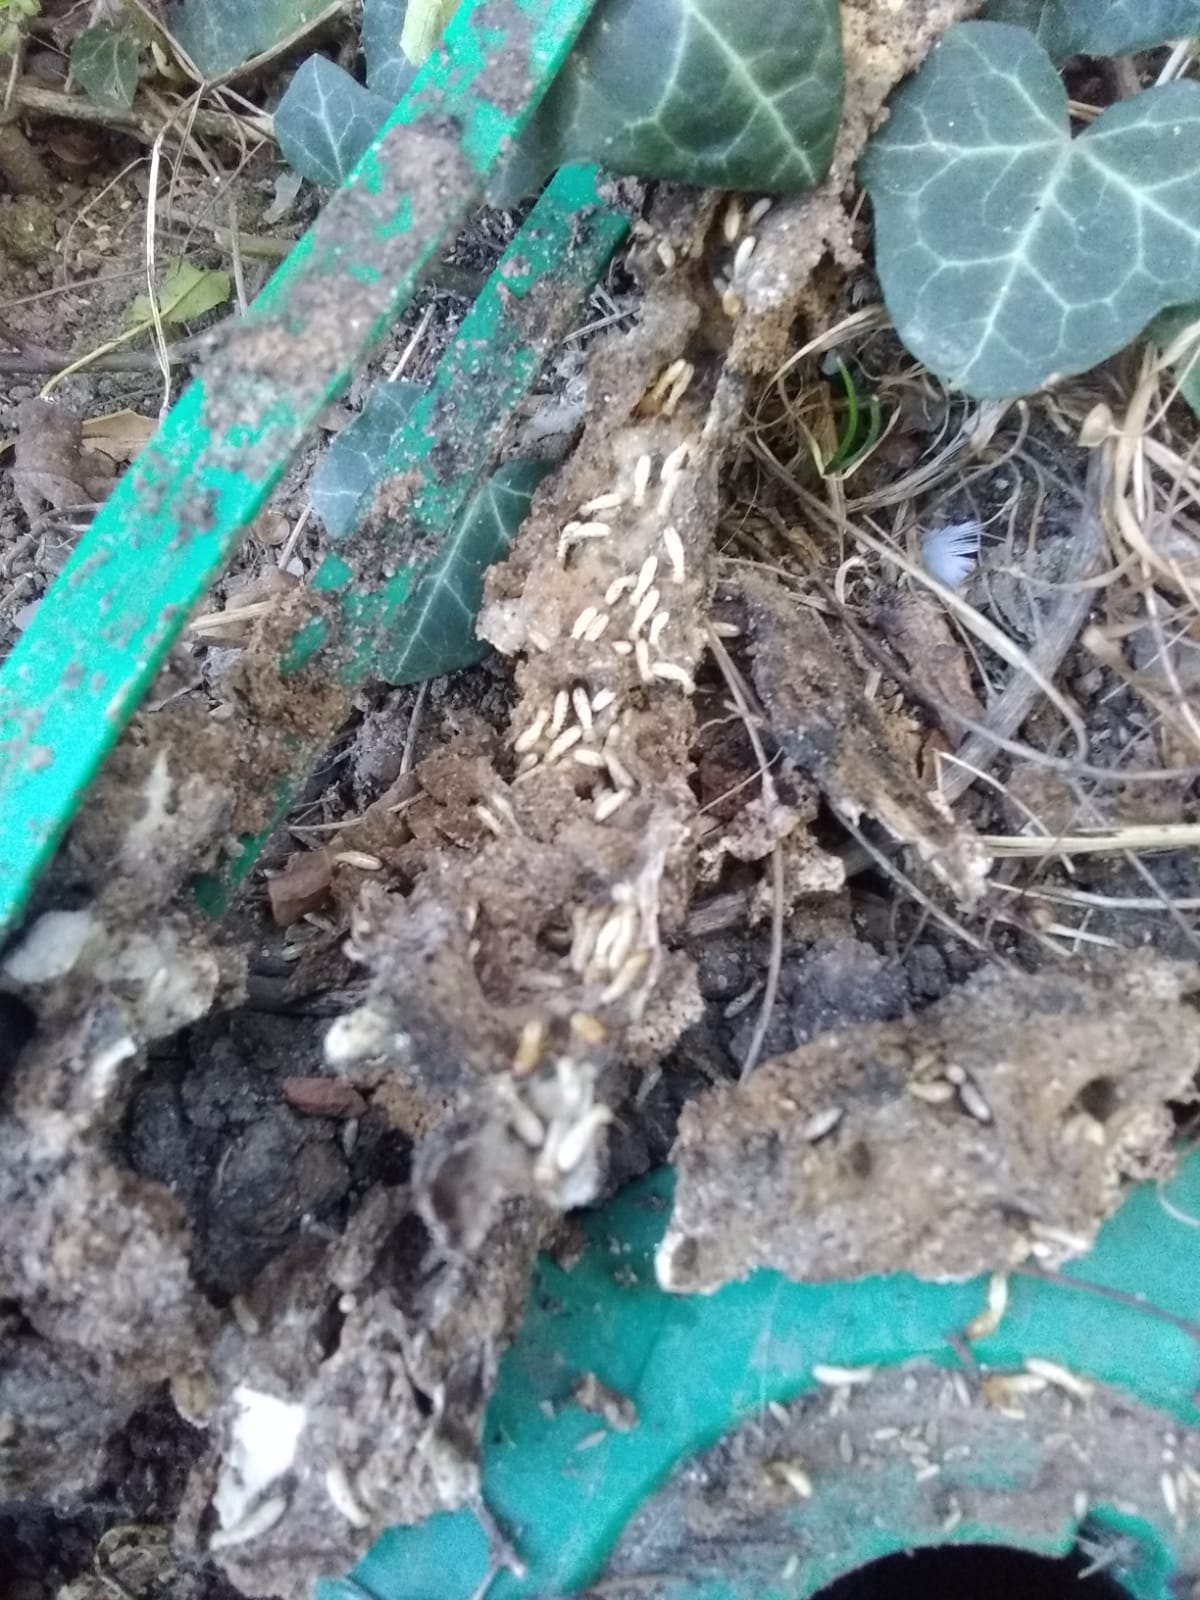 Termites ayant dévoré la quasi totalité de l'appât